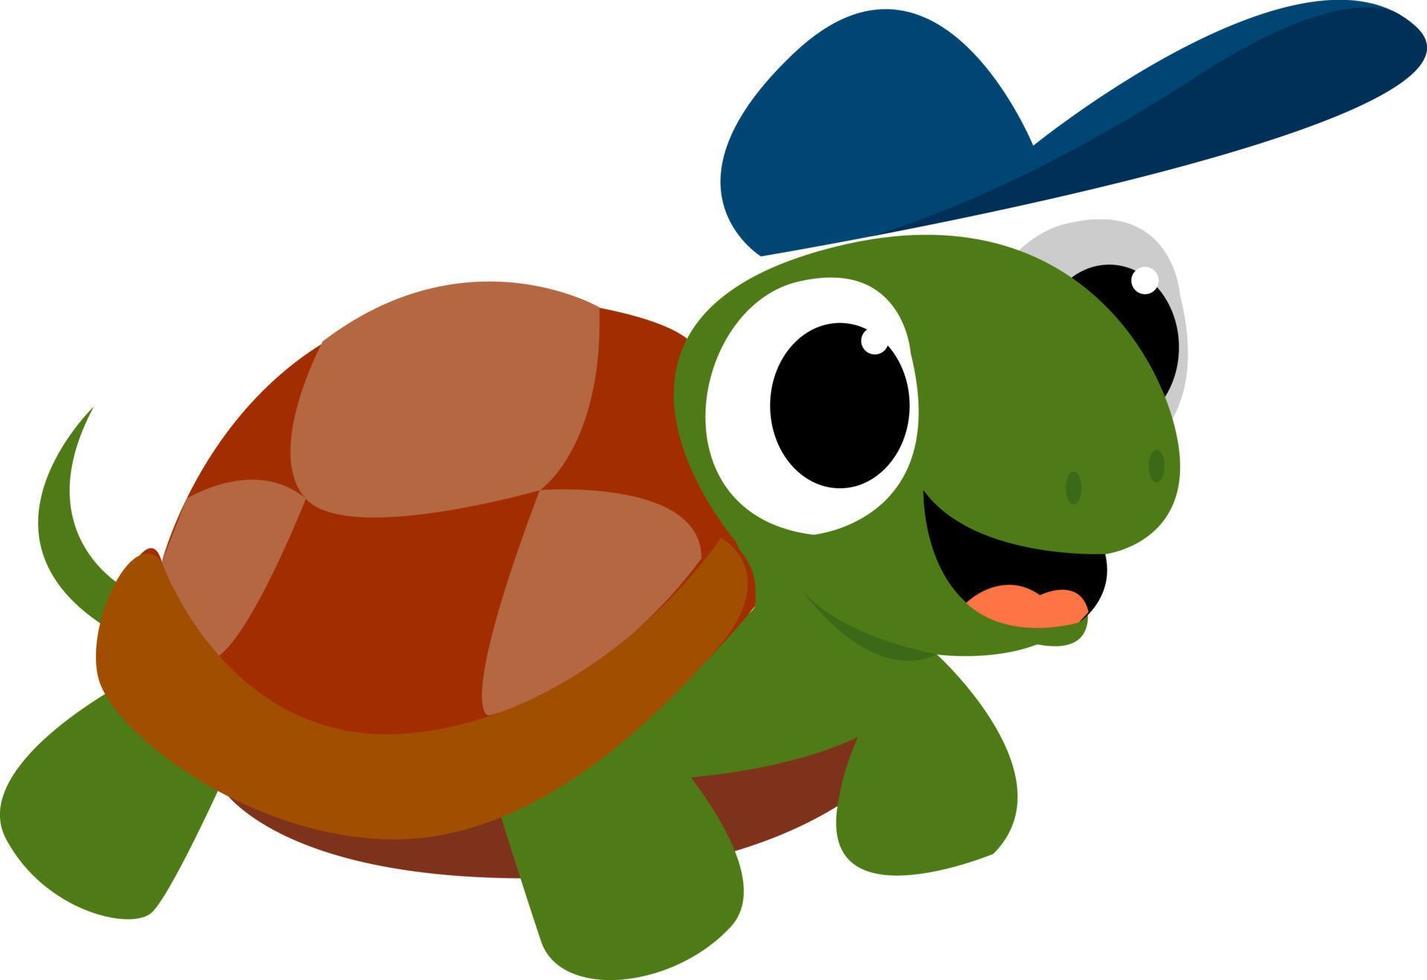 tartaruga com chapéu azul, ilustração, vetor em fundo branco.